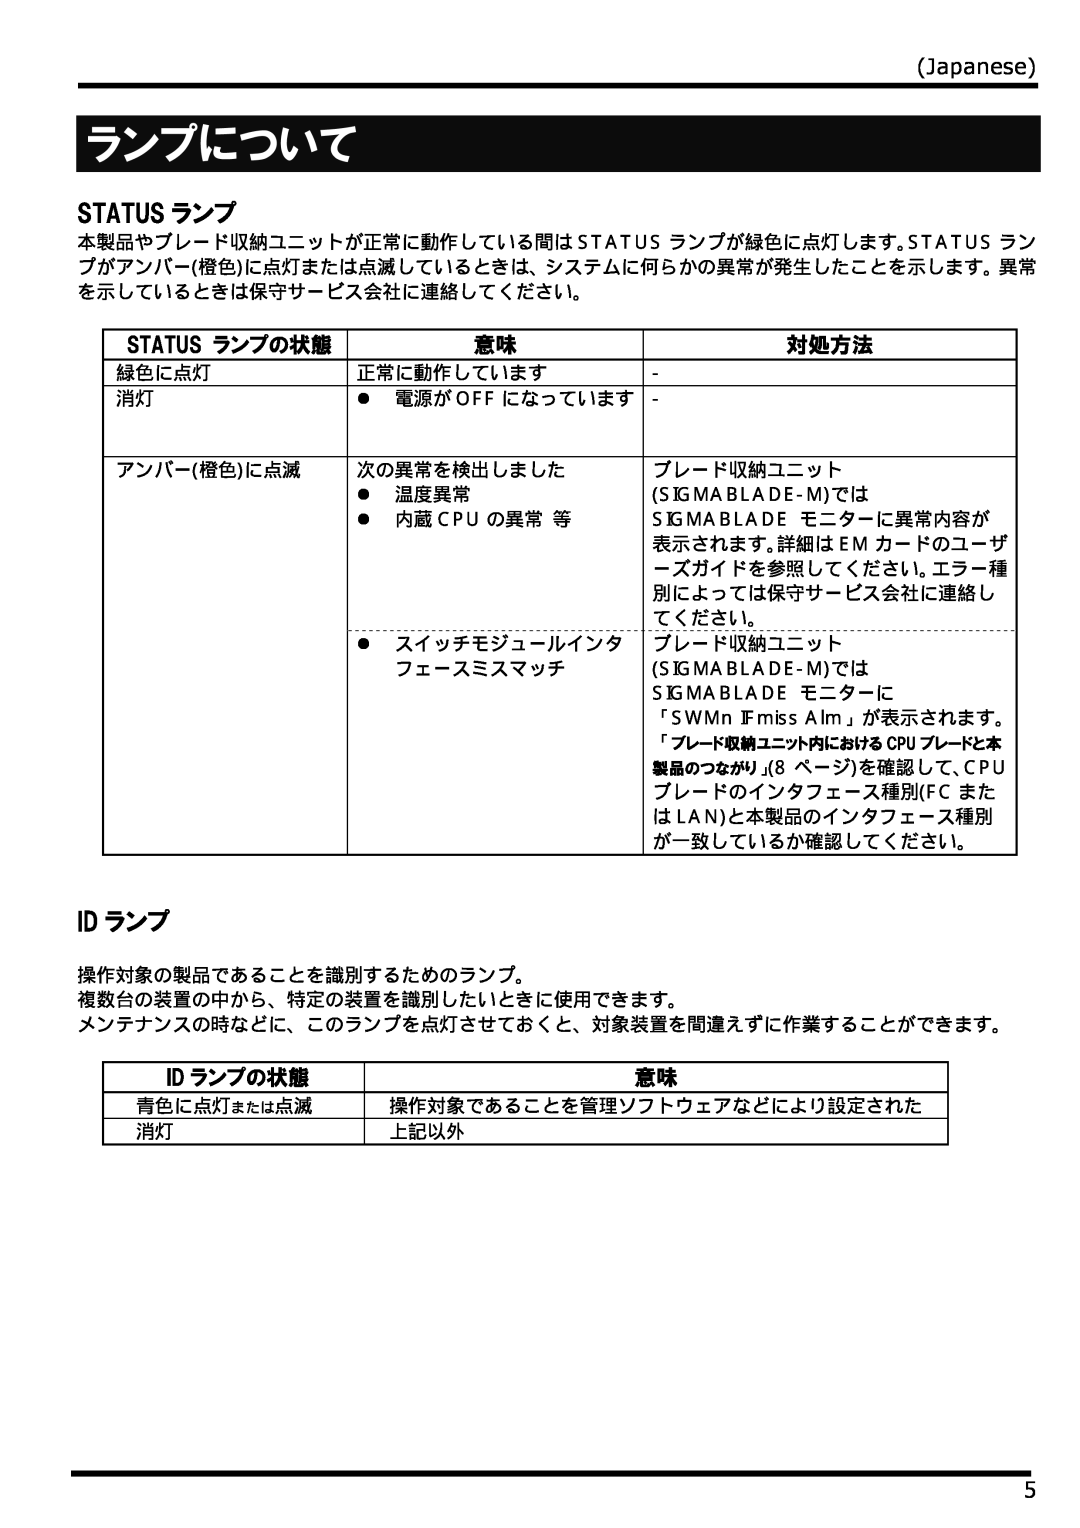 NEC N8406-022 manual ランプについて, Status ランプ, Japanese, 対処方法, Id ランプの状態 